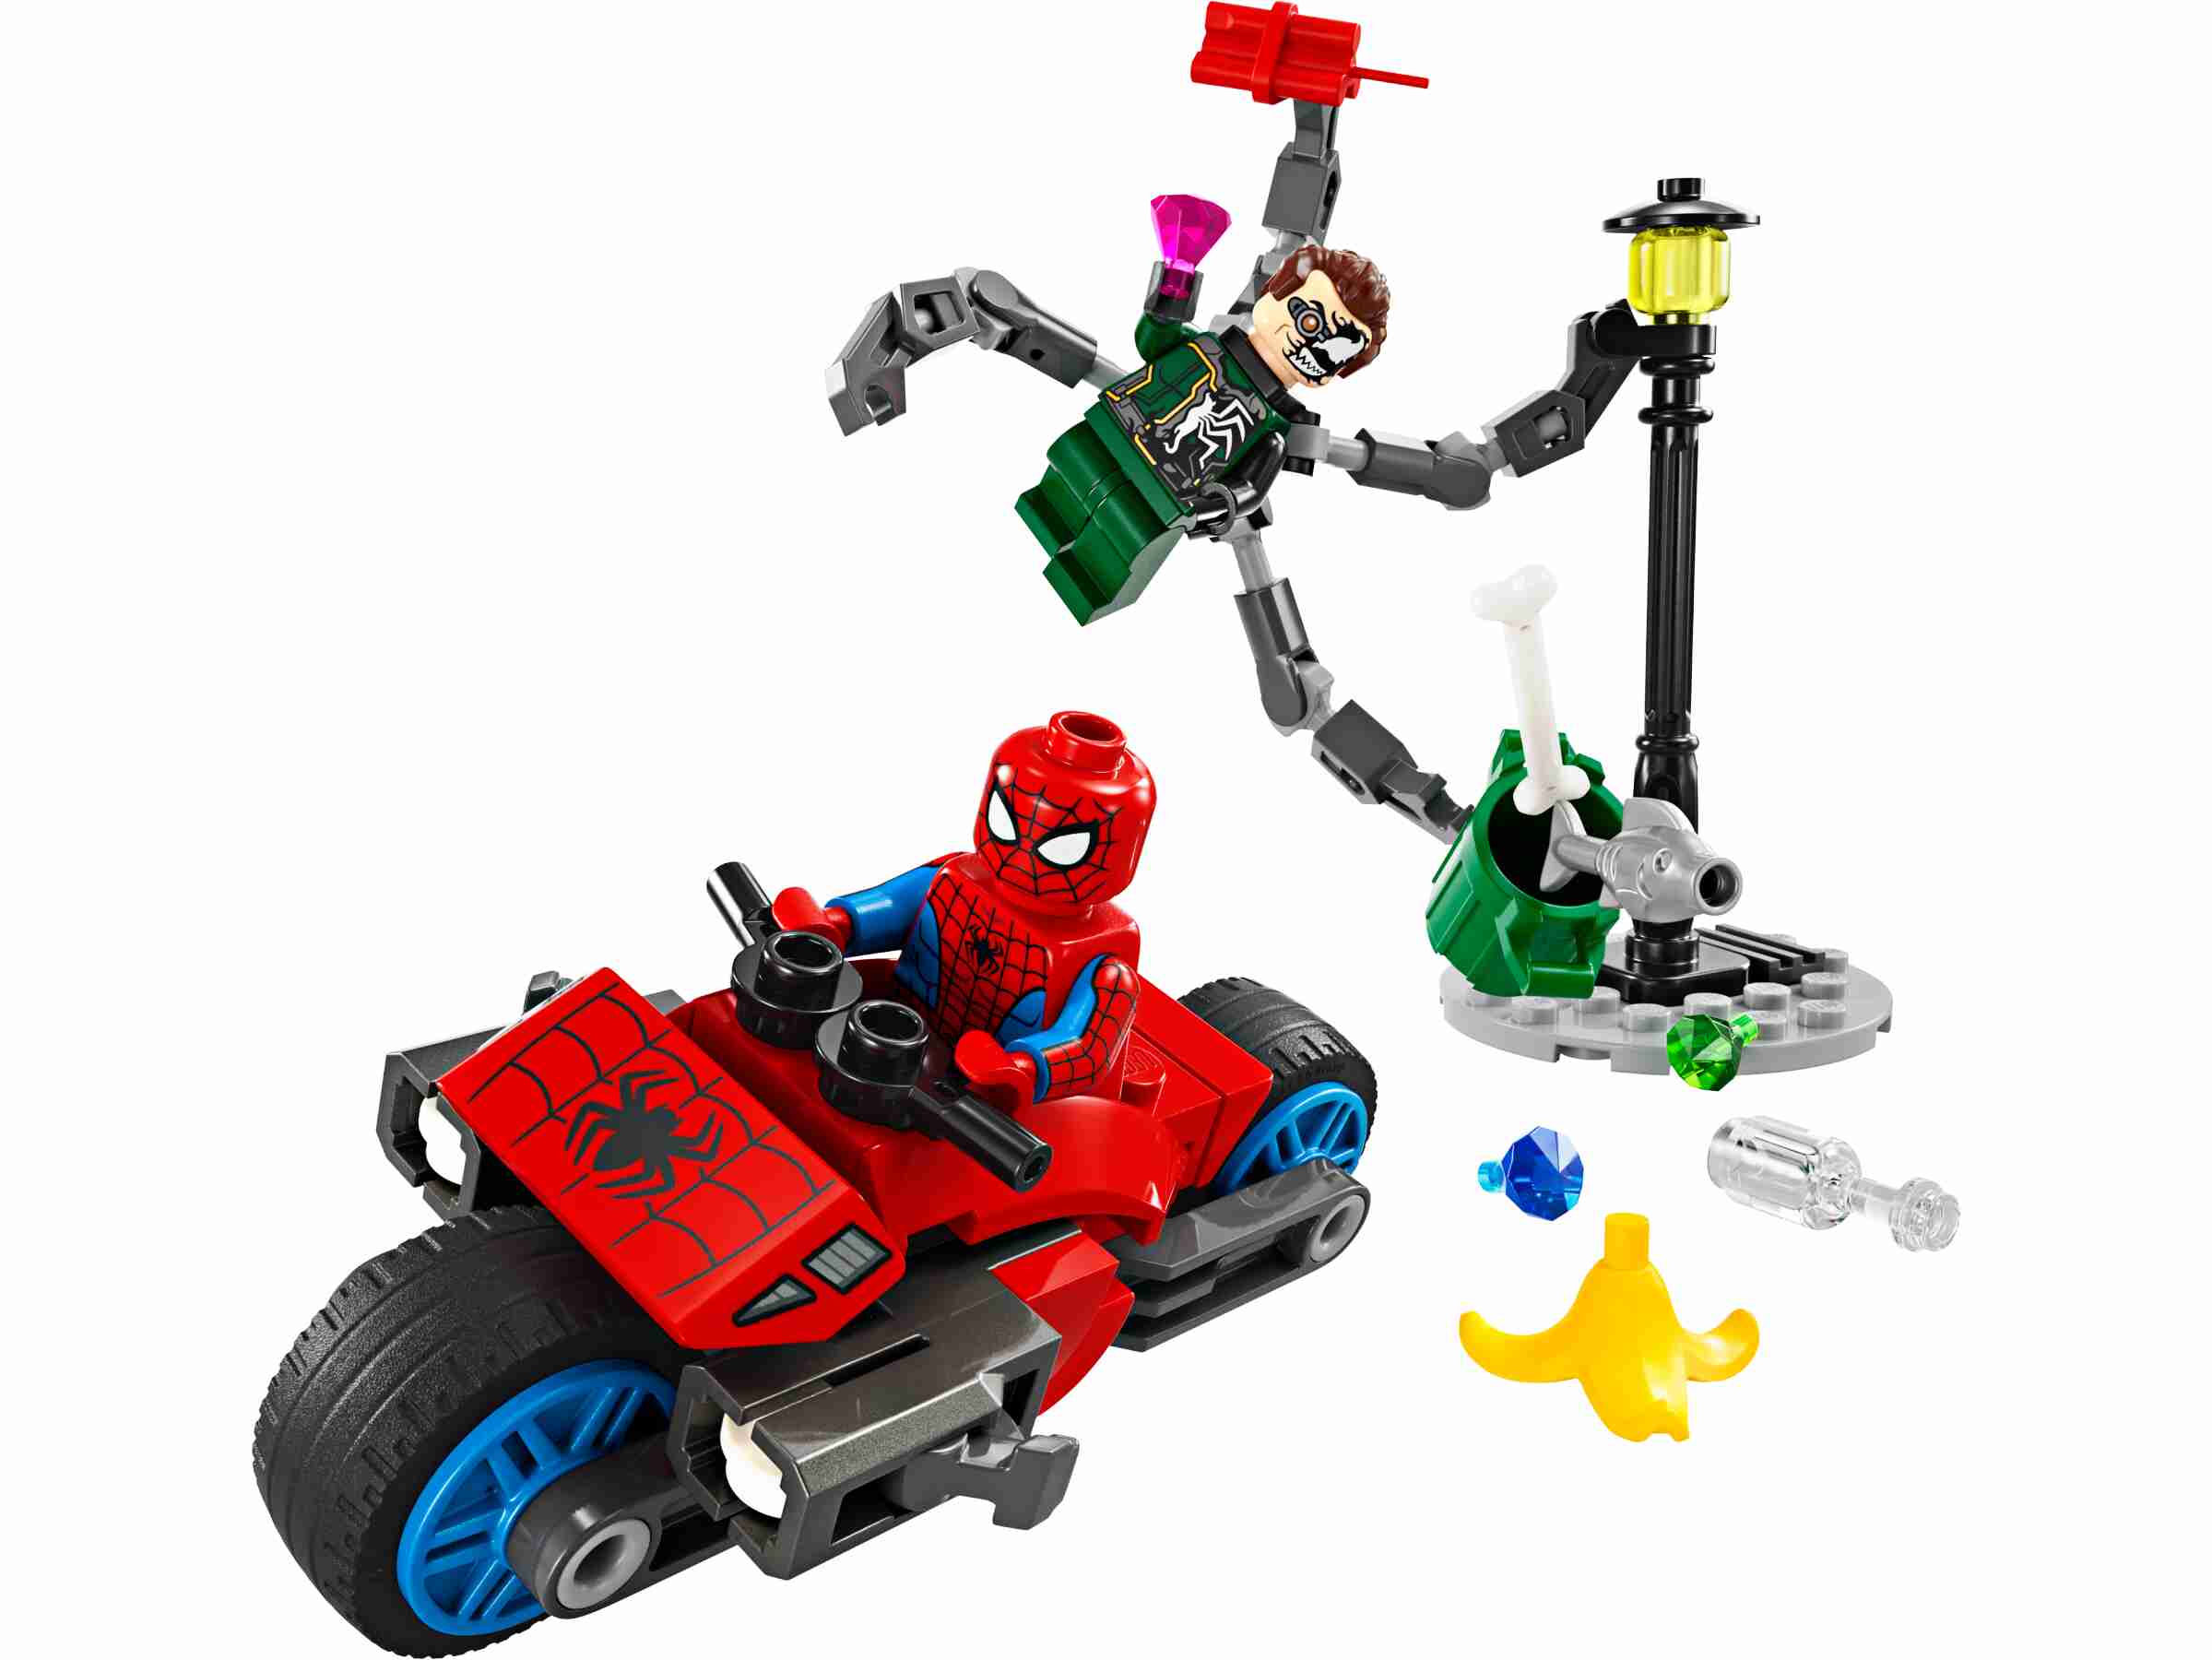 LEGO 76275 Marvel Motorrad-Verfolgungsjagd: Spider-Man vs. Doc Ock